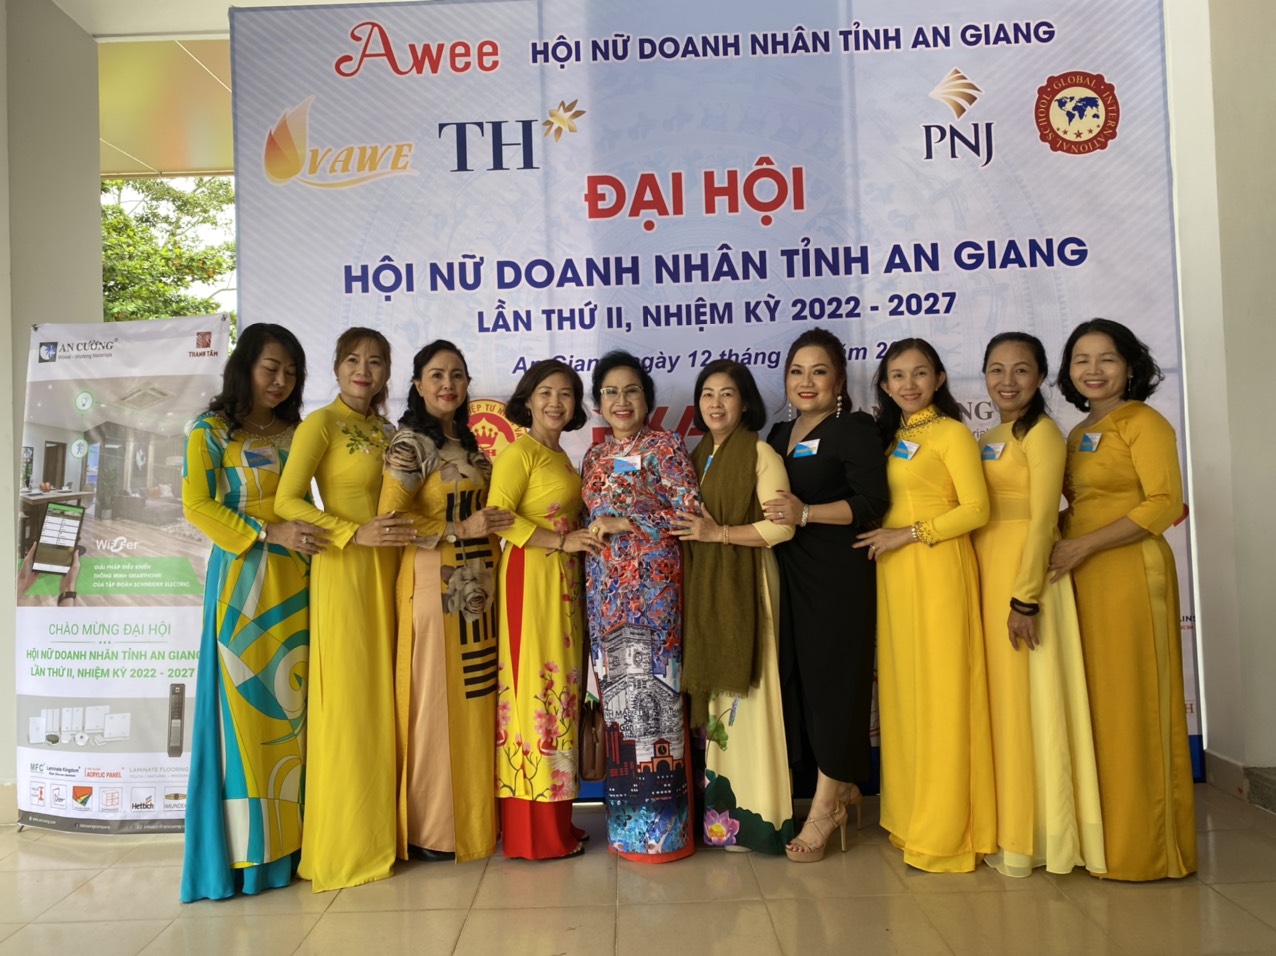 Đại hội Nữ doanh nhân tỉnh An Giang, Lần thứ II - Nhiệm kỳ 2022 - 2027